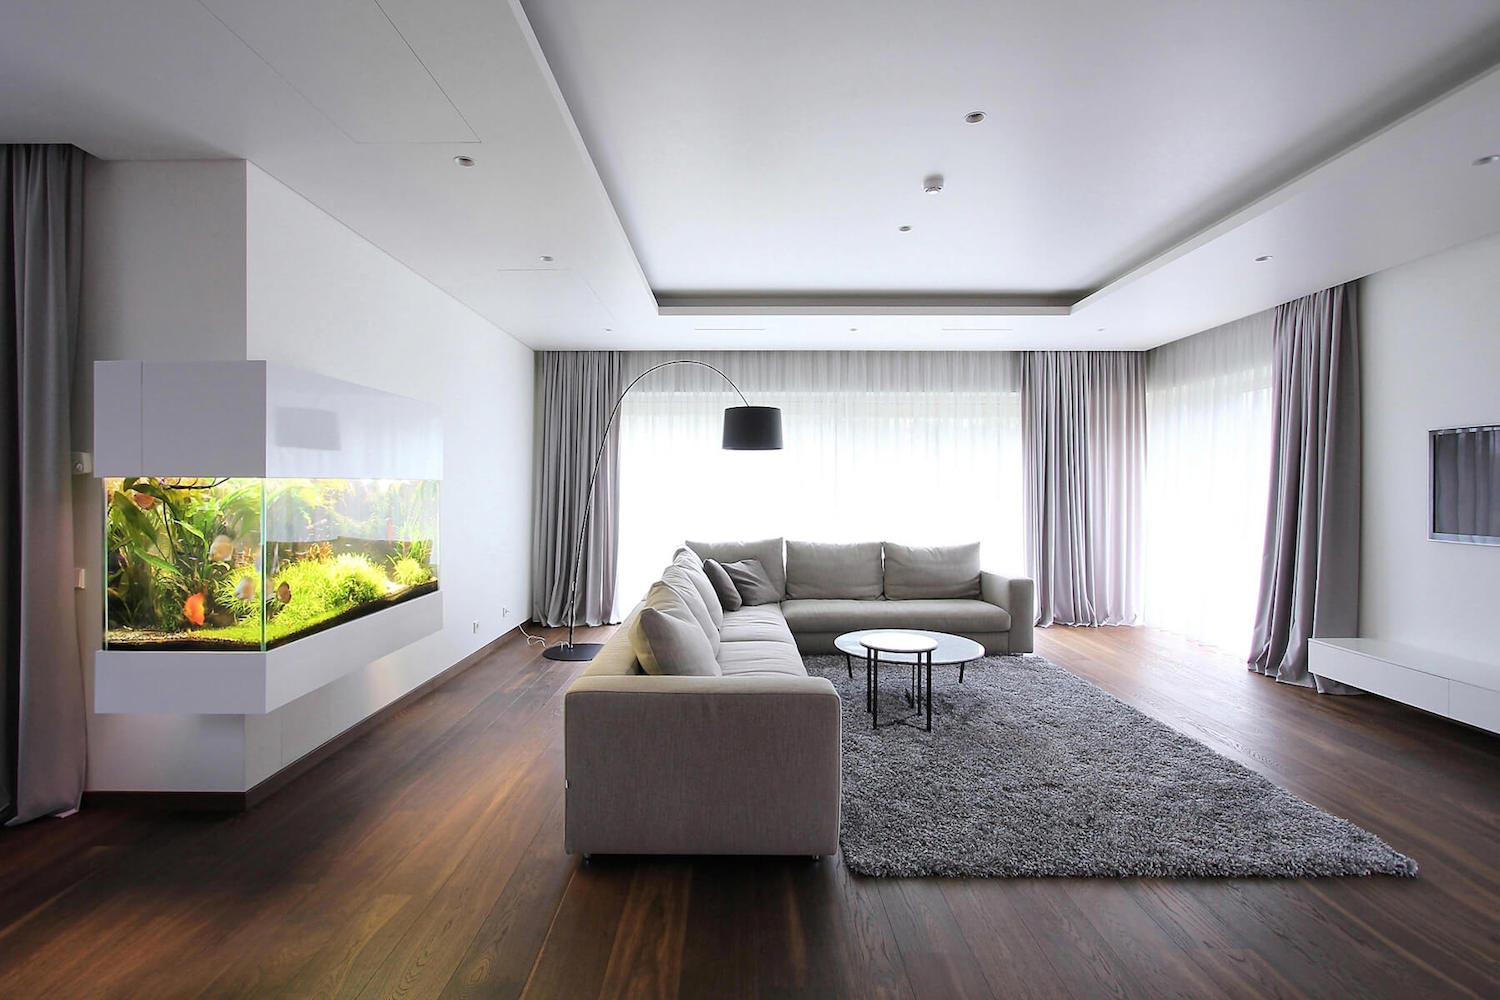 Ascetic and minimalist interior design - CAANdesign ...